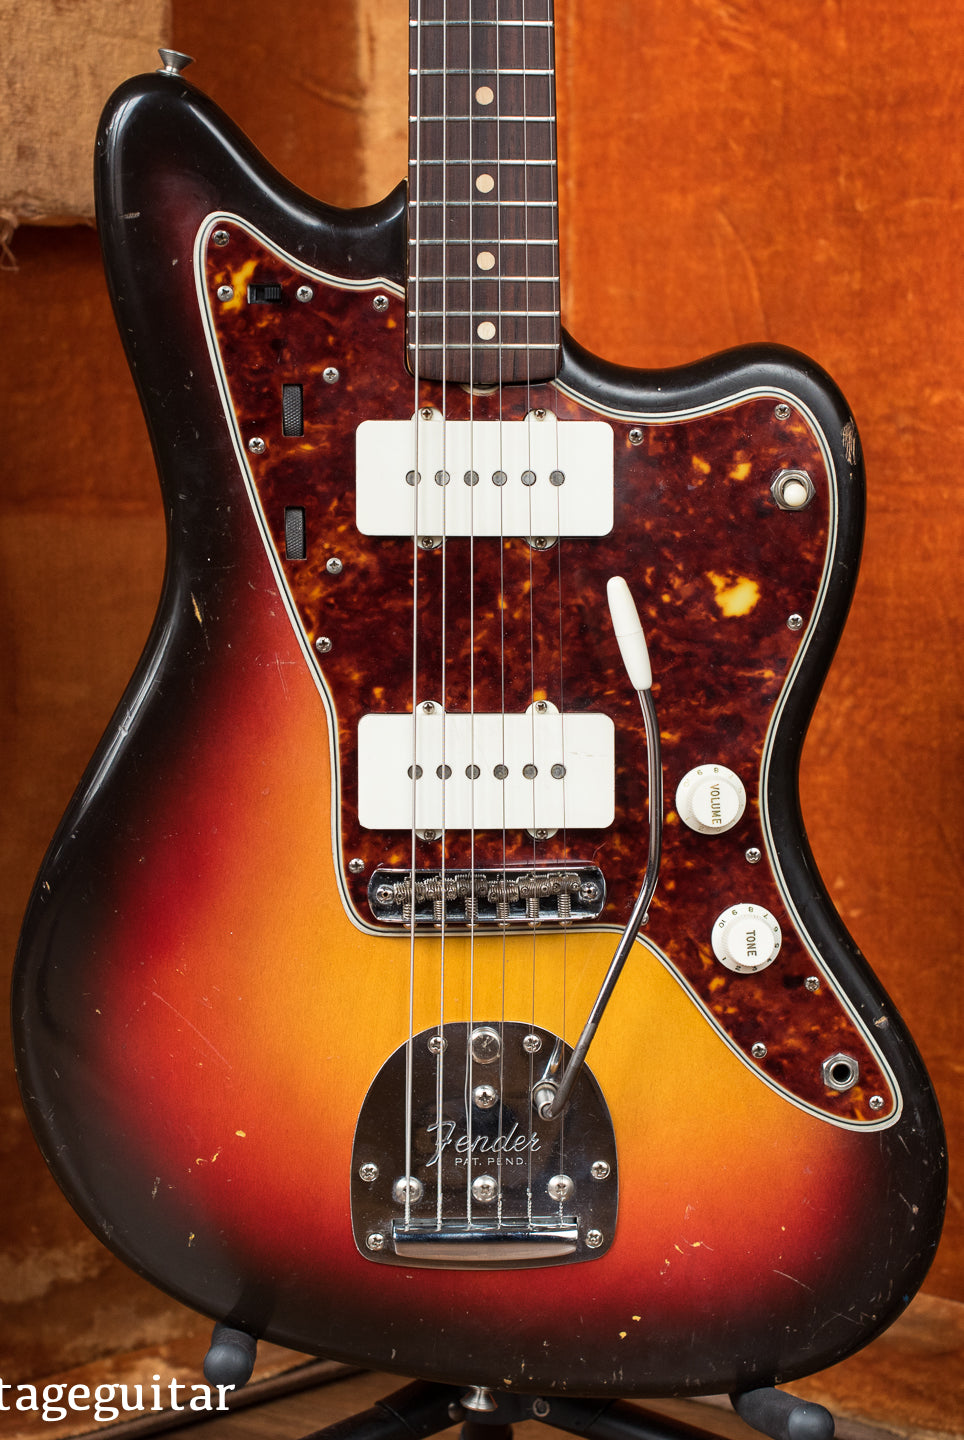 Vintage 1961 Fender Jazzmaster electric guitar